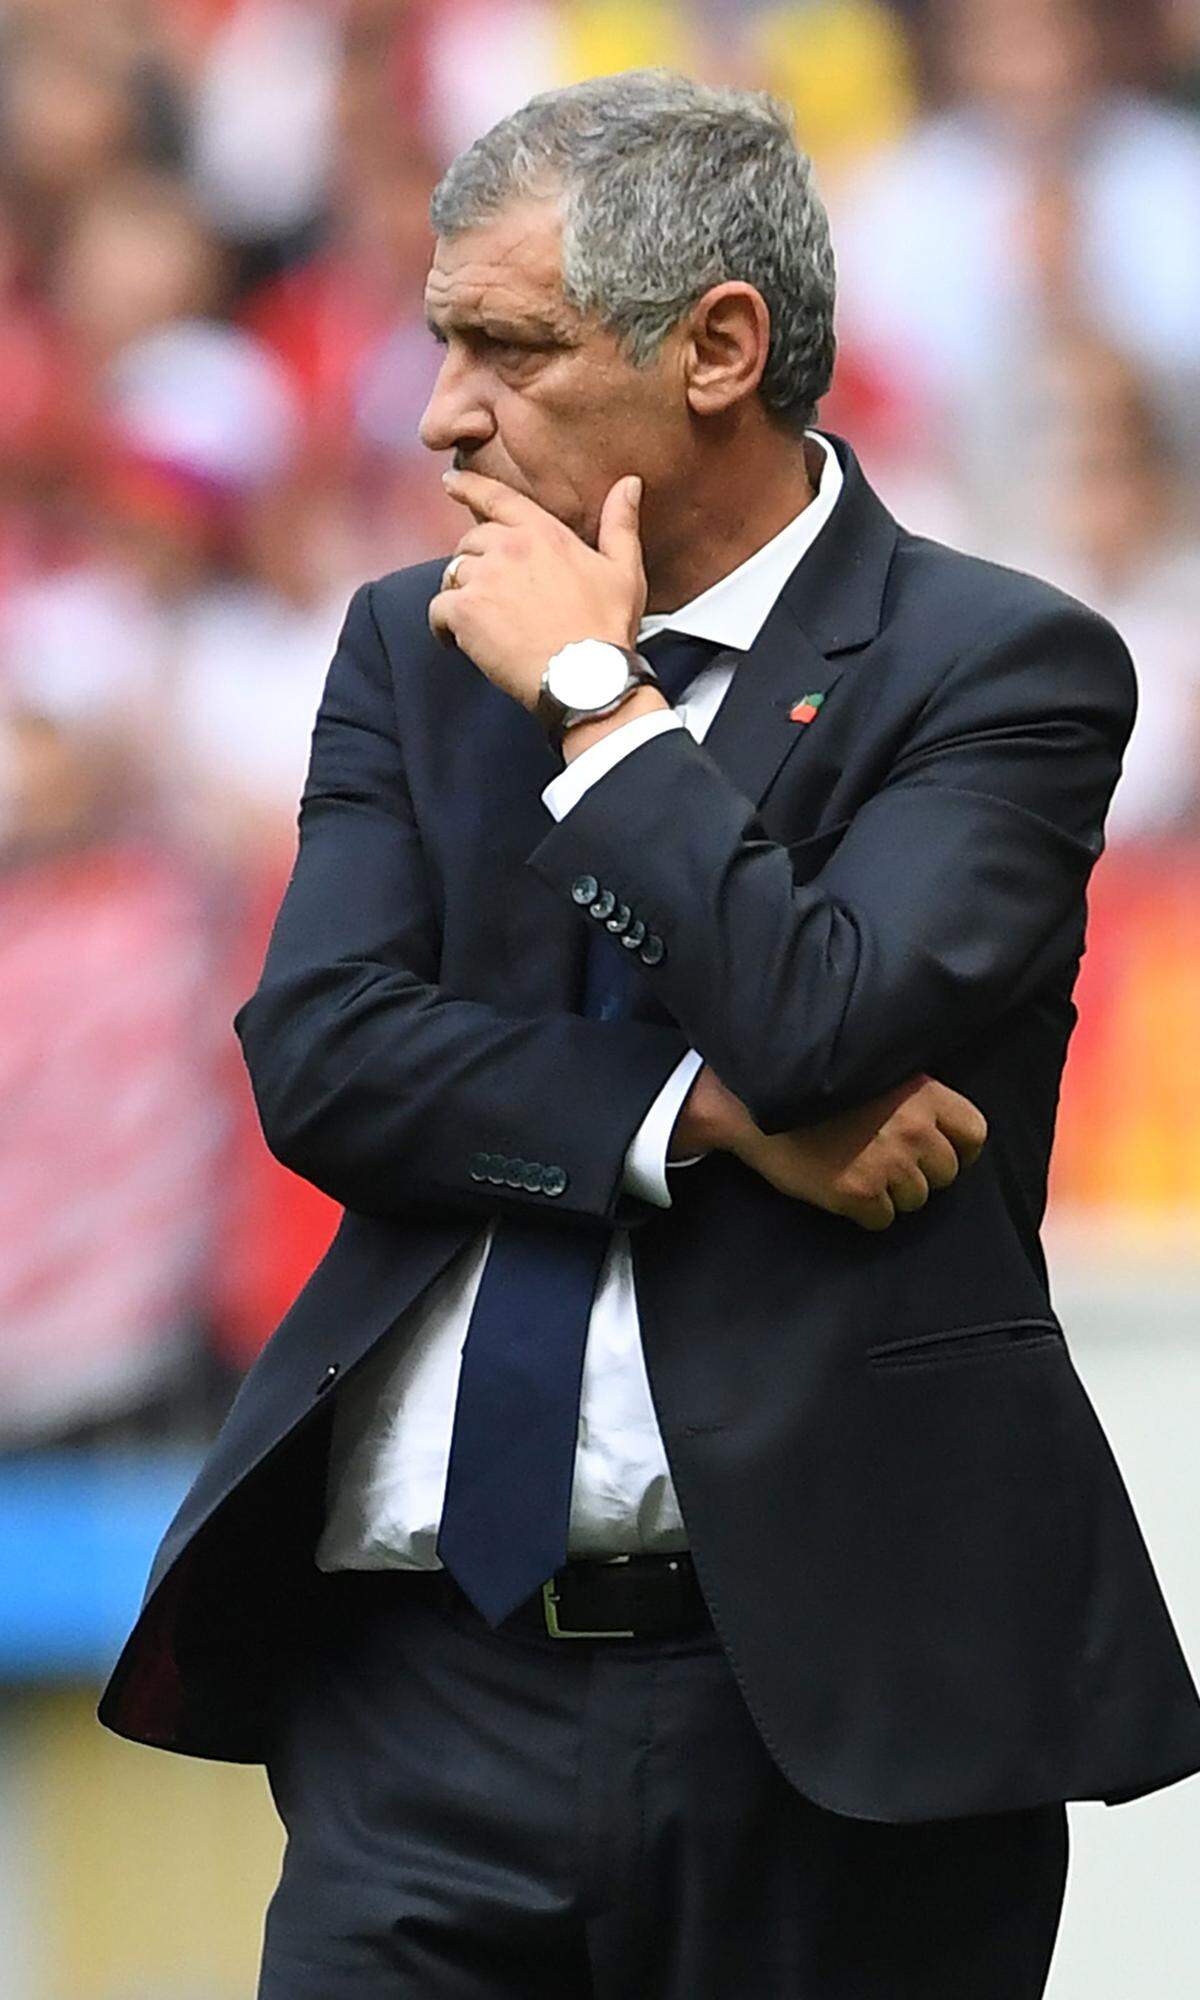 Nach einem eher durchwachsenen modischen Auftreten bei der letzten WM, damals noch als Coach von Griechenland, sind bei Portugal-Trainer Fernando Santos gute Fortschritte erkennbar. Die Krawatte ist ordentlich gebunden, die Hose sitzt, der Lockenschopf gezähmt. Nur die Sorge im Gesicht ist ihm geblieben. Uruguay hat Portugal nach Hause geschickt. 